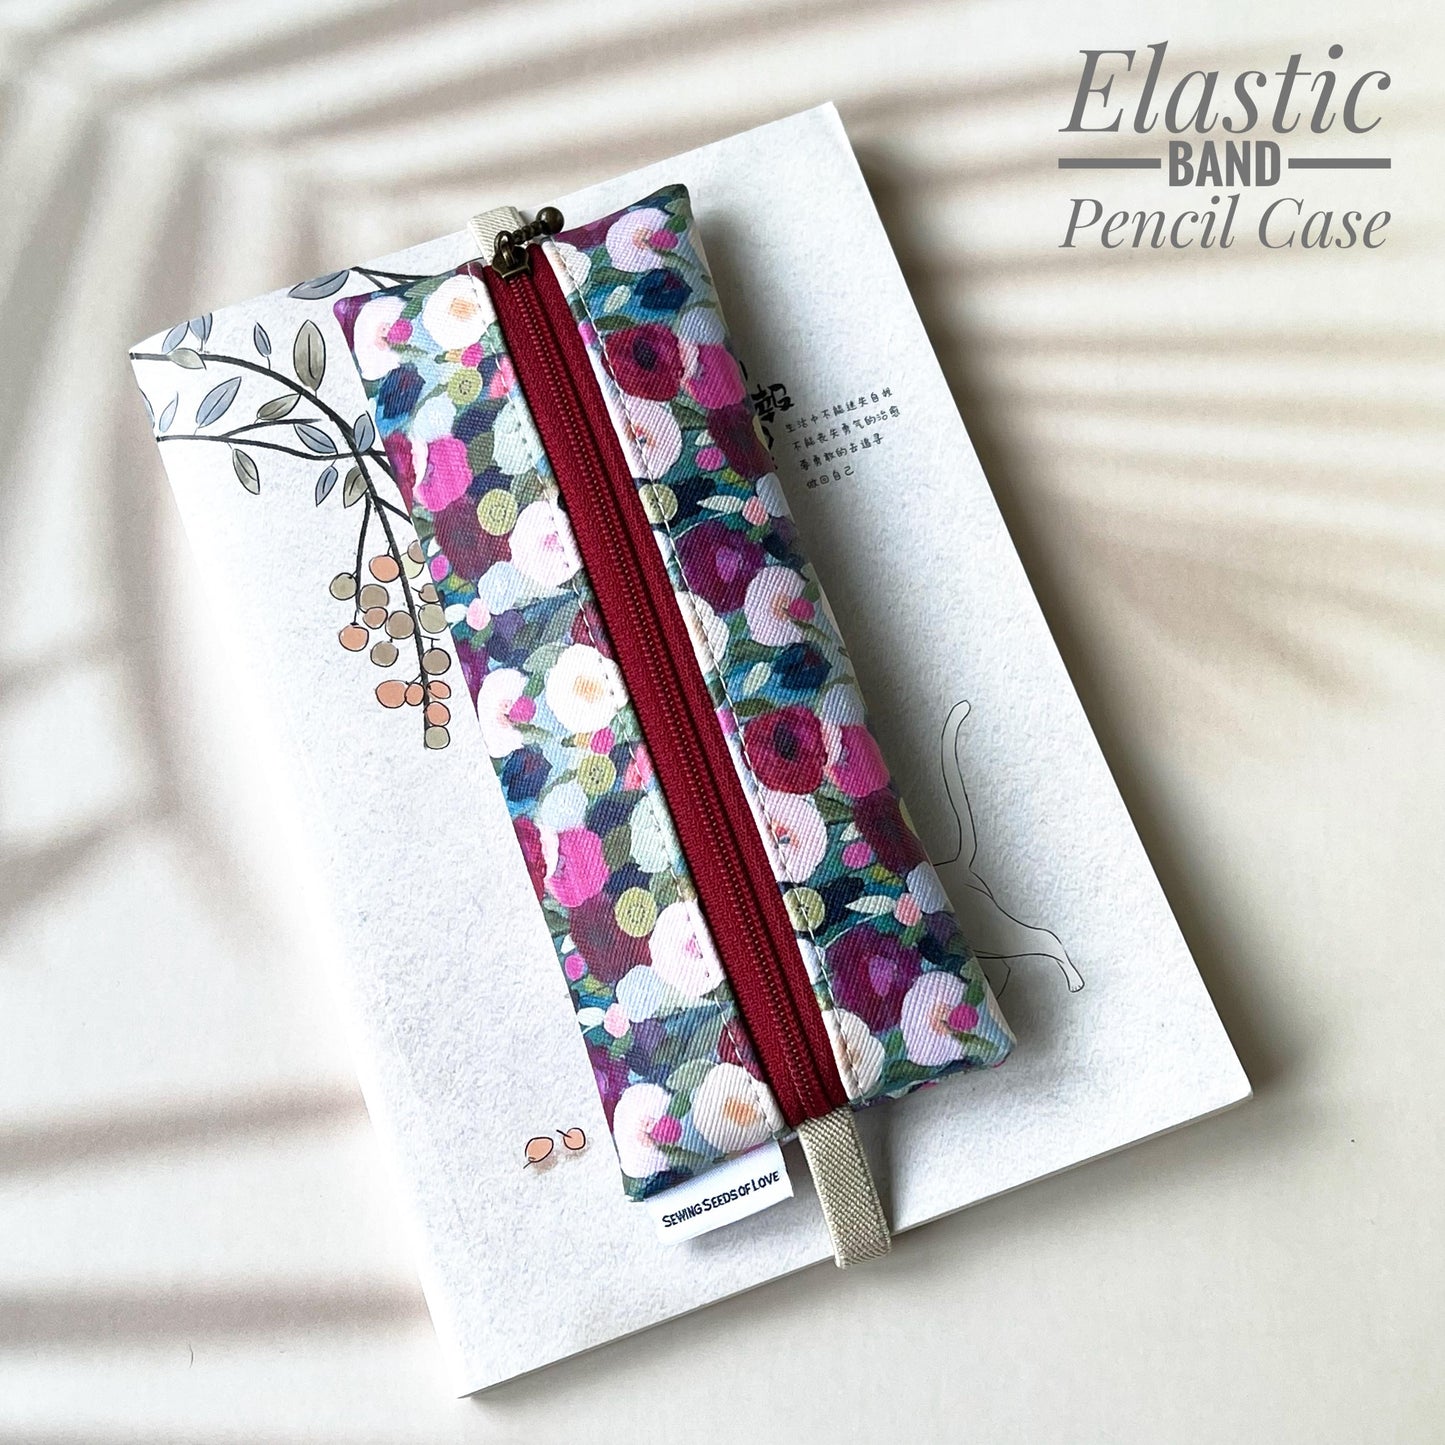 Elastic Band Pencil Case - EBPC10